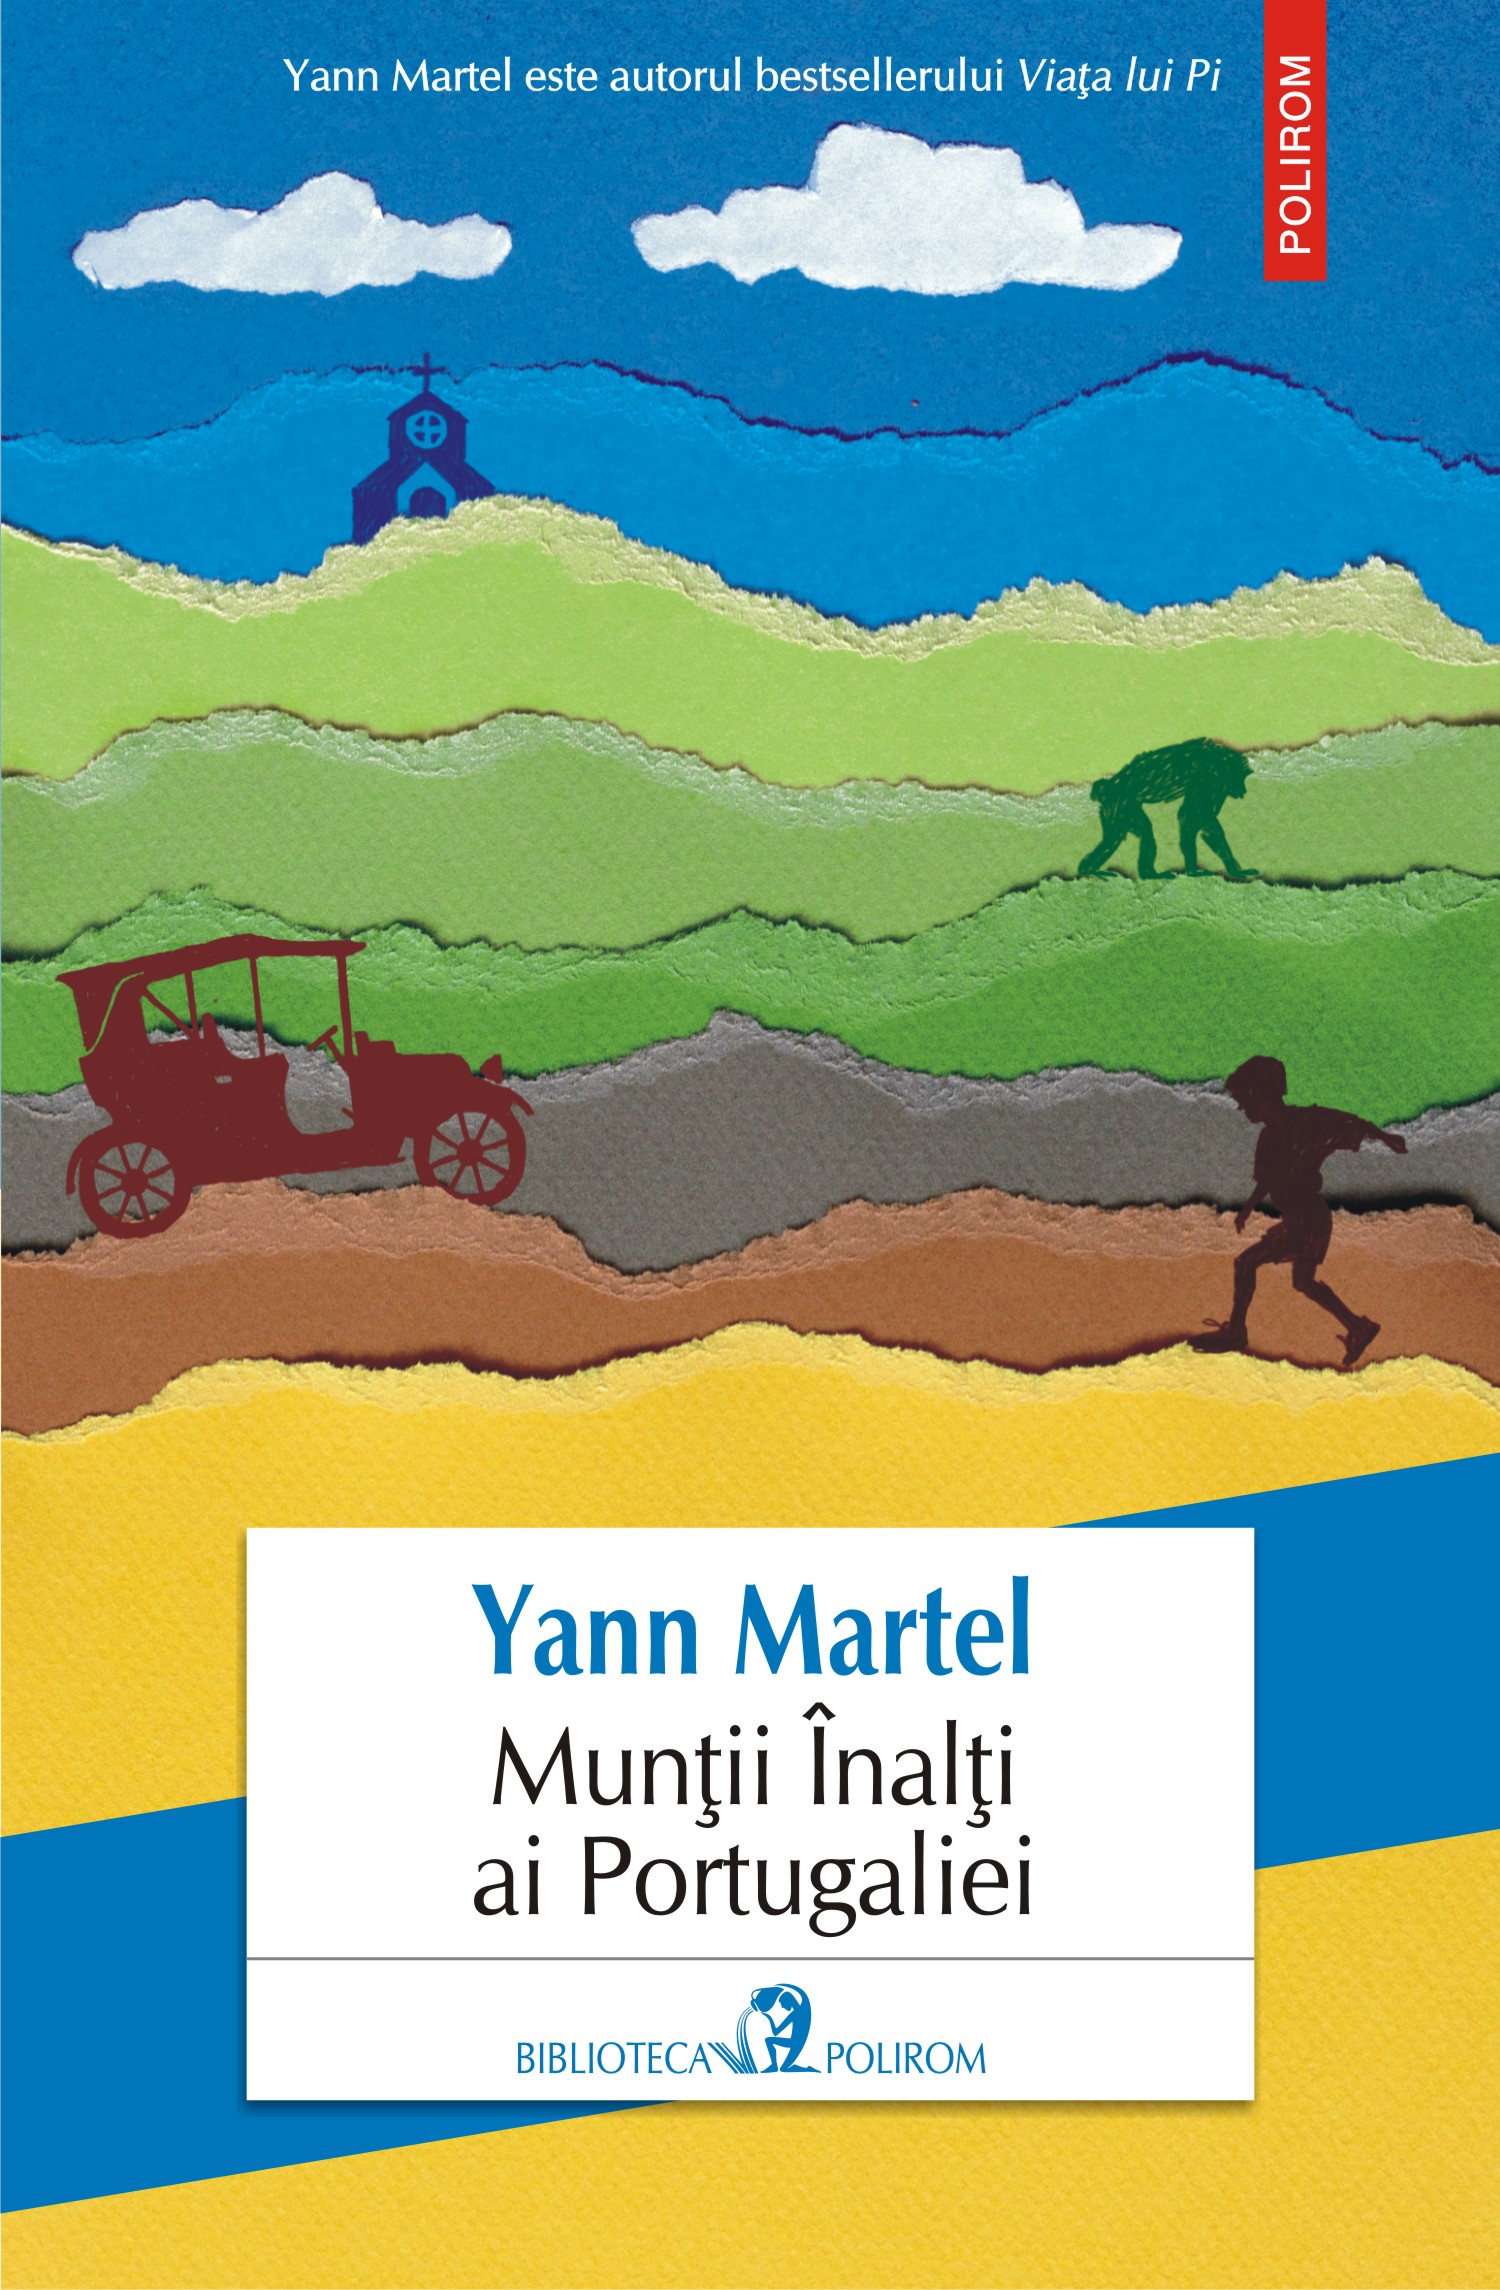 eBook Muntii inalti ai Portugaliei - Yann Martel